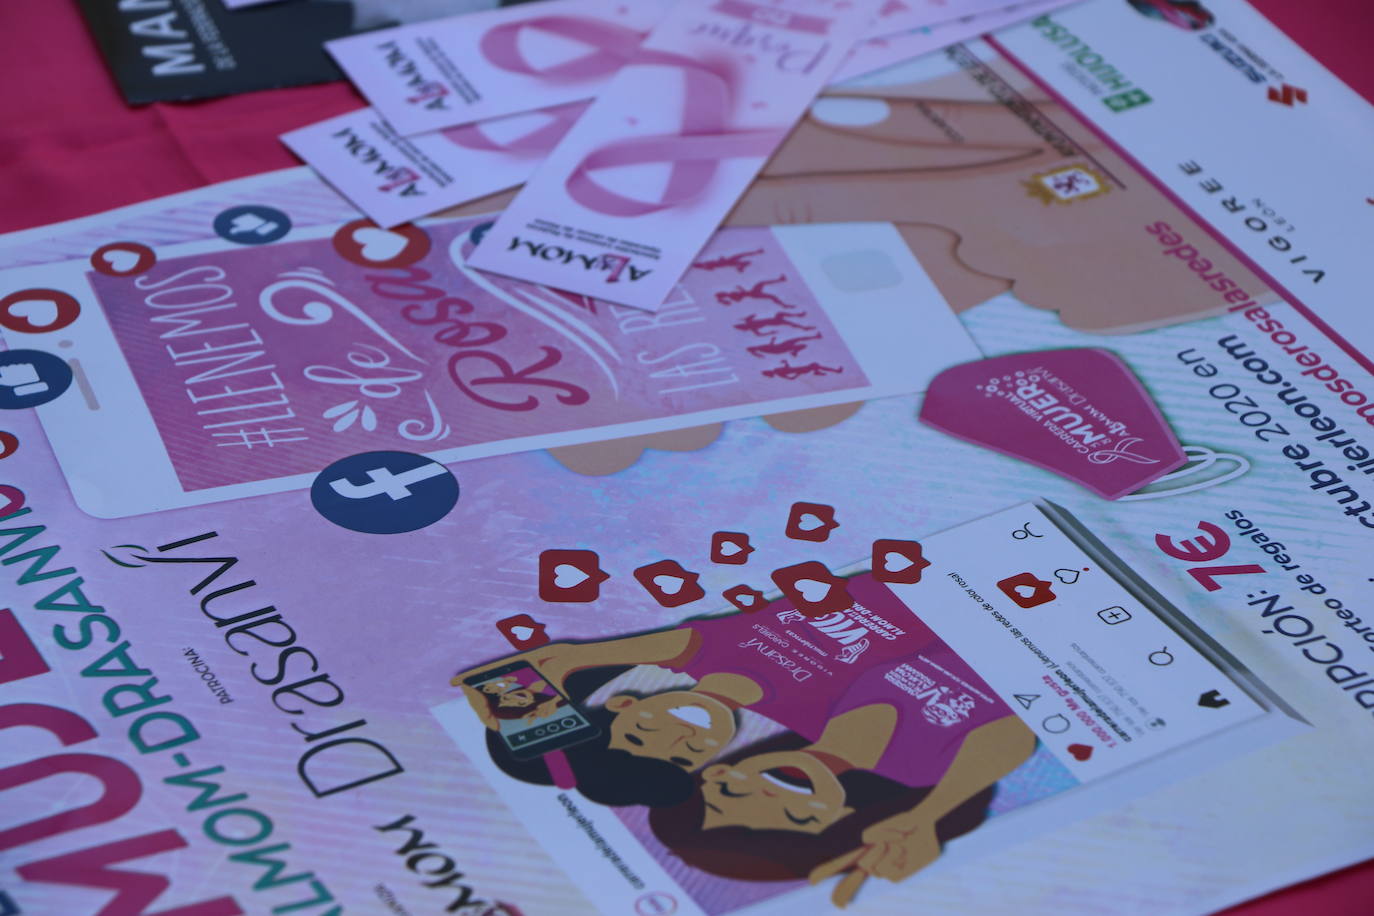 Las calles de León acogen diferentes mesas petitorias en las que se solicita un donativo contra el cáncer de mama.